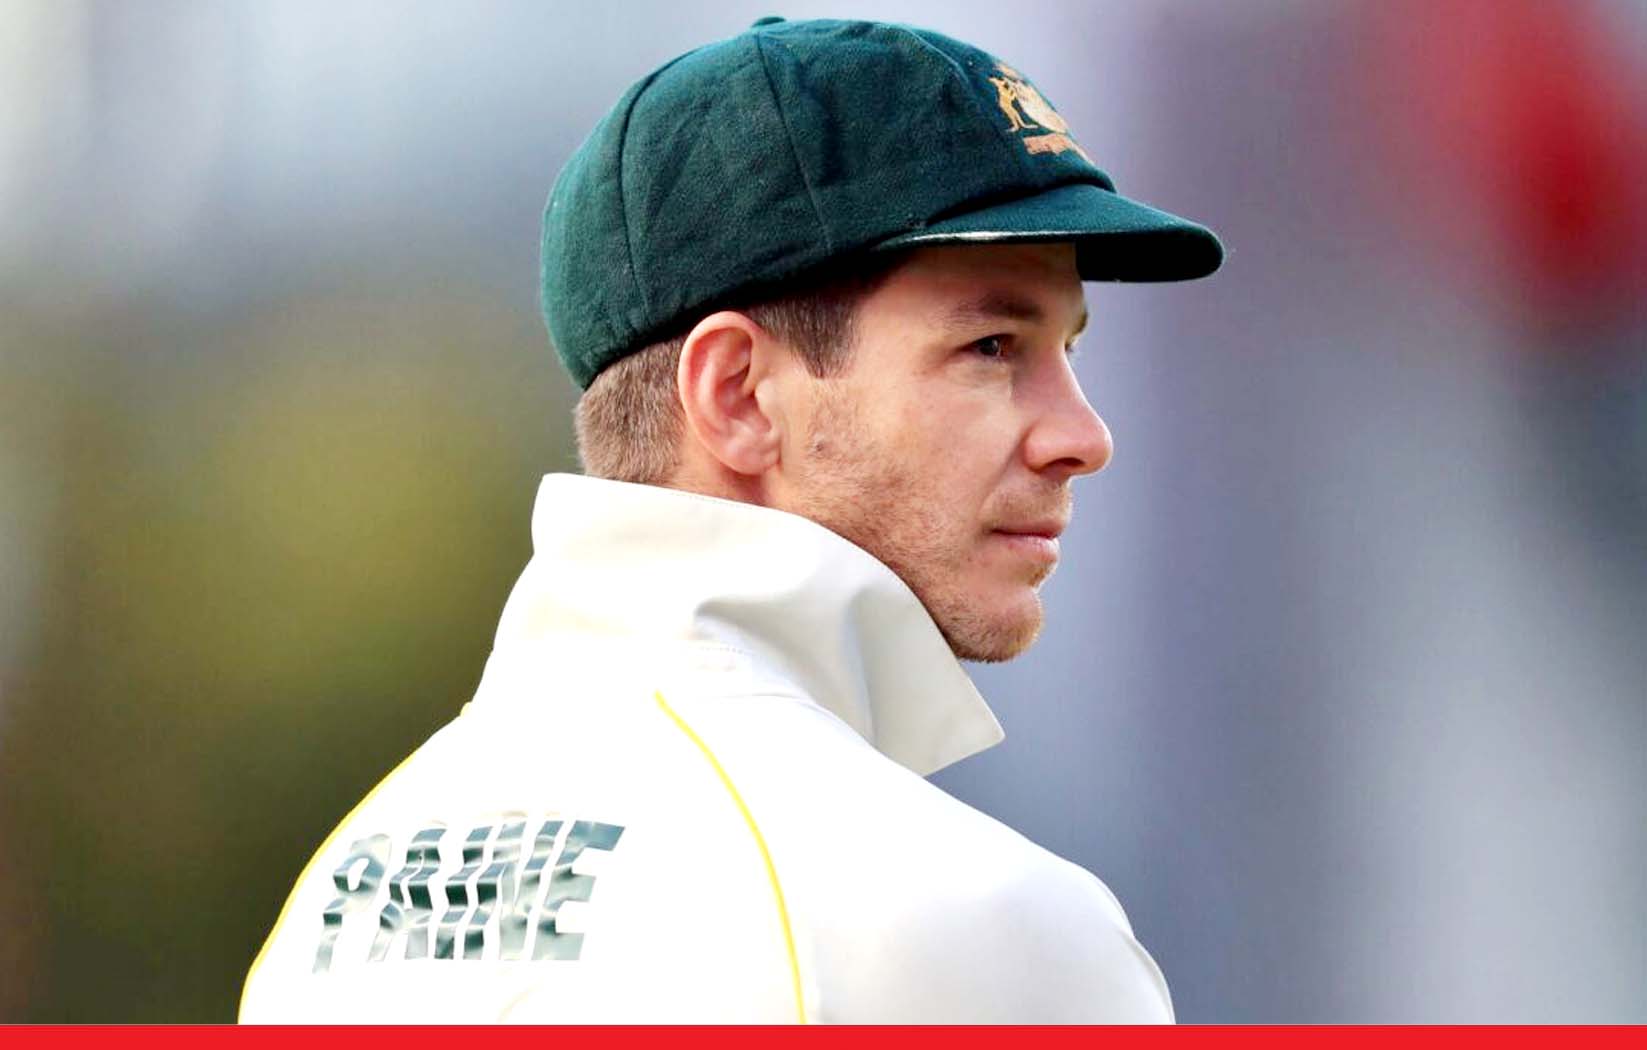 टिम पेन ने छोड़ी ऑस्ट्रेलियाई टेस्ट कप्तानी, लगा लड़की को अश्लील मैसेज भेजने का आरोप